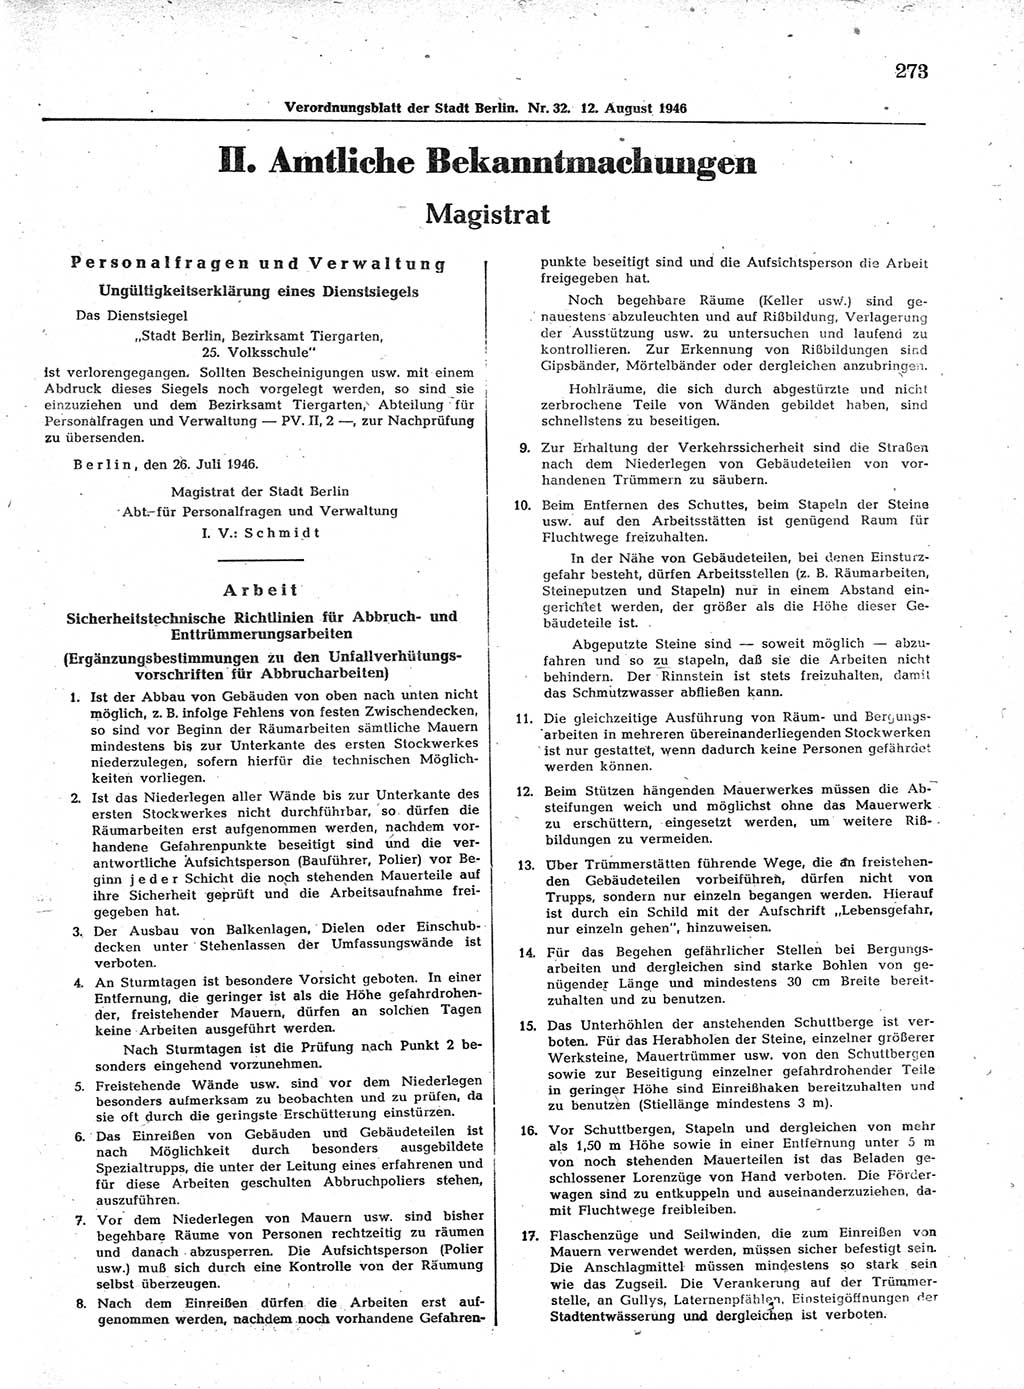 Verordnungsblatt (VOBl.) der Stadt Berlin, für Groß-Berlin 1946, Seite 273 (VOBl. Bln. 1946, S. 273)